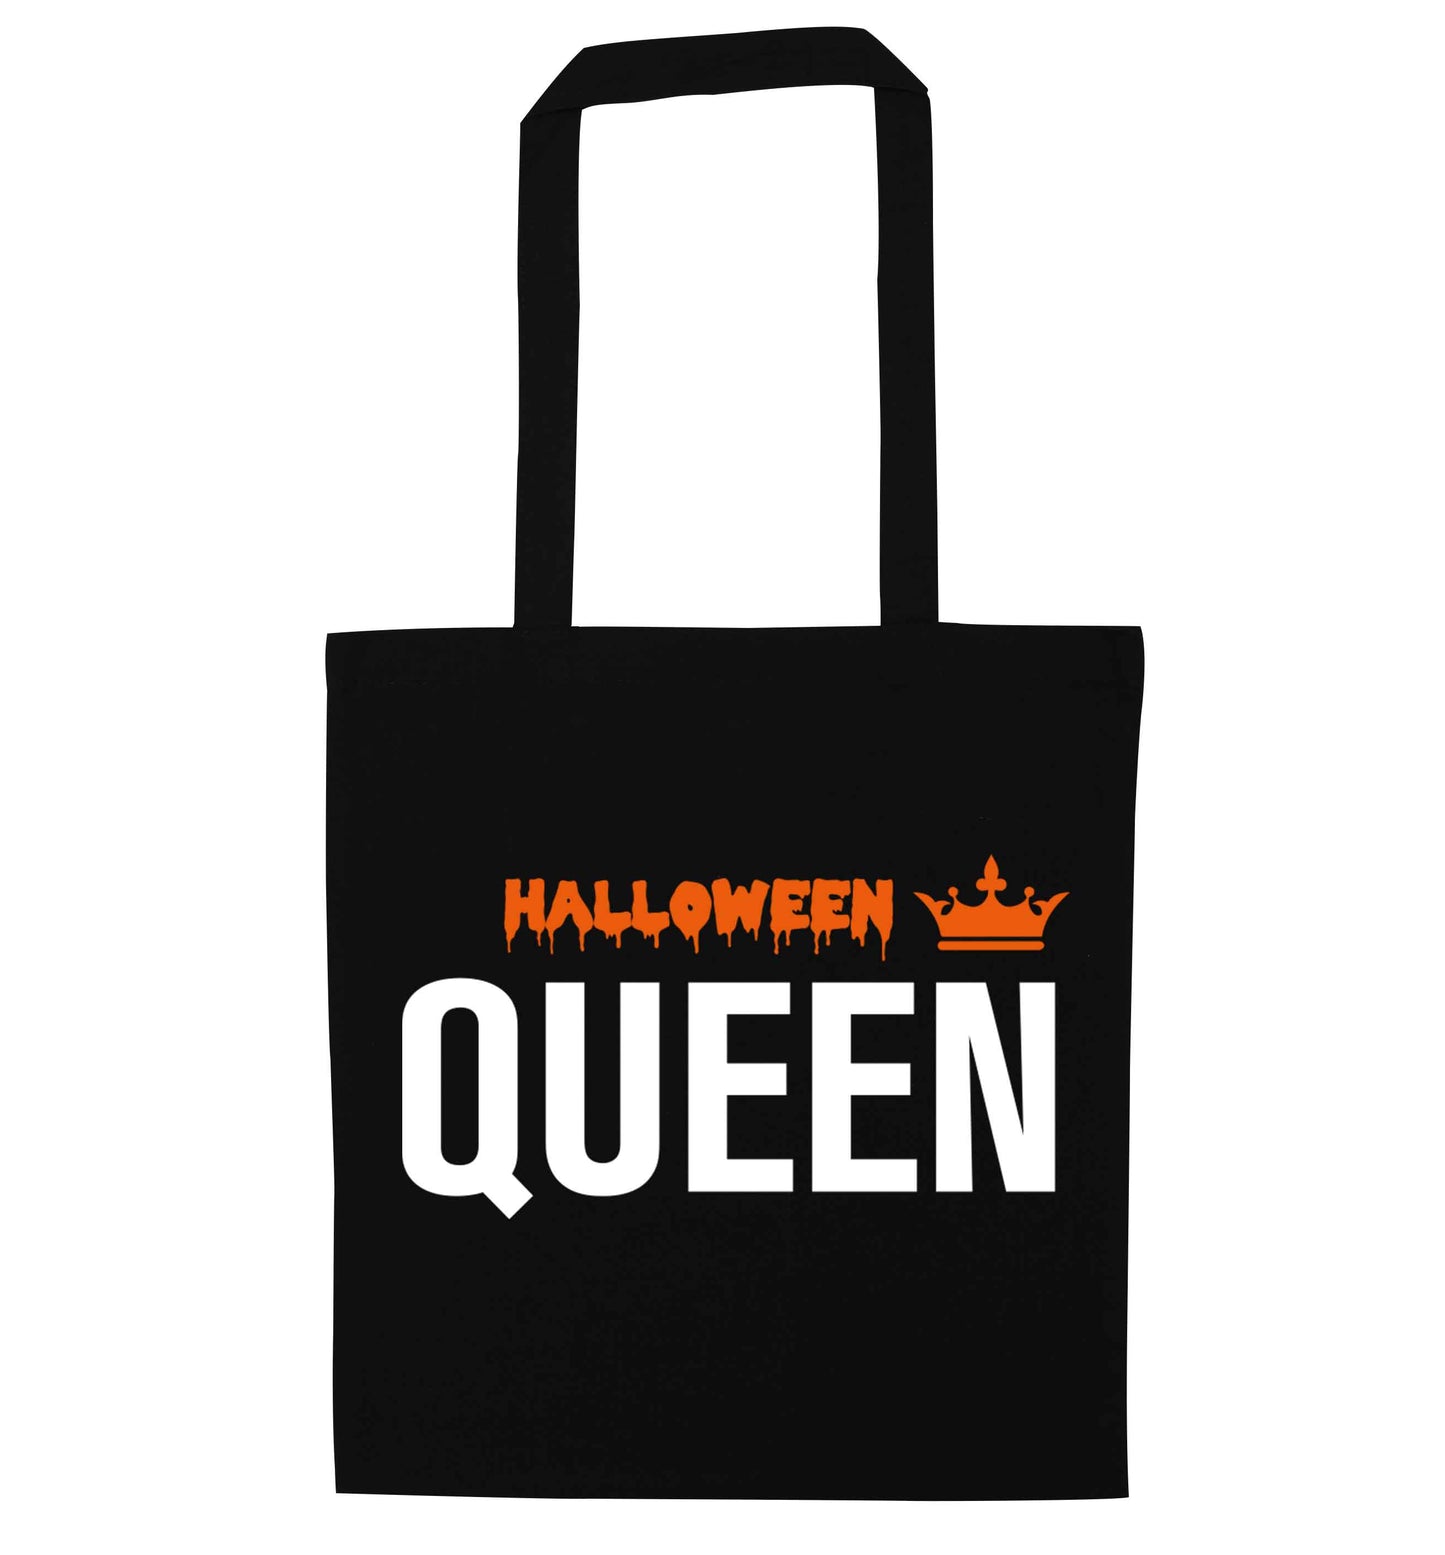 Halloween queen black tote bag